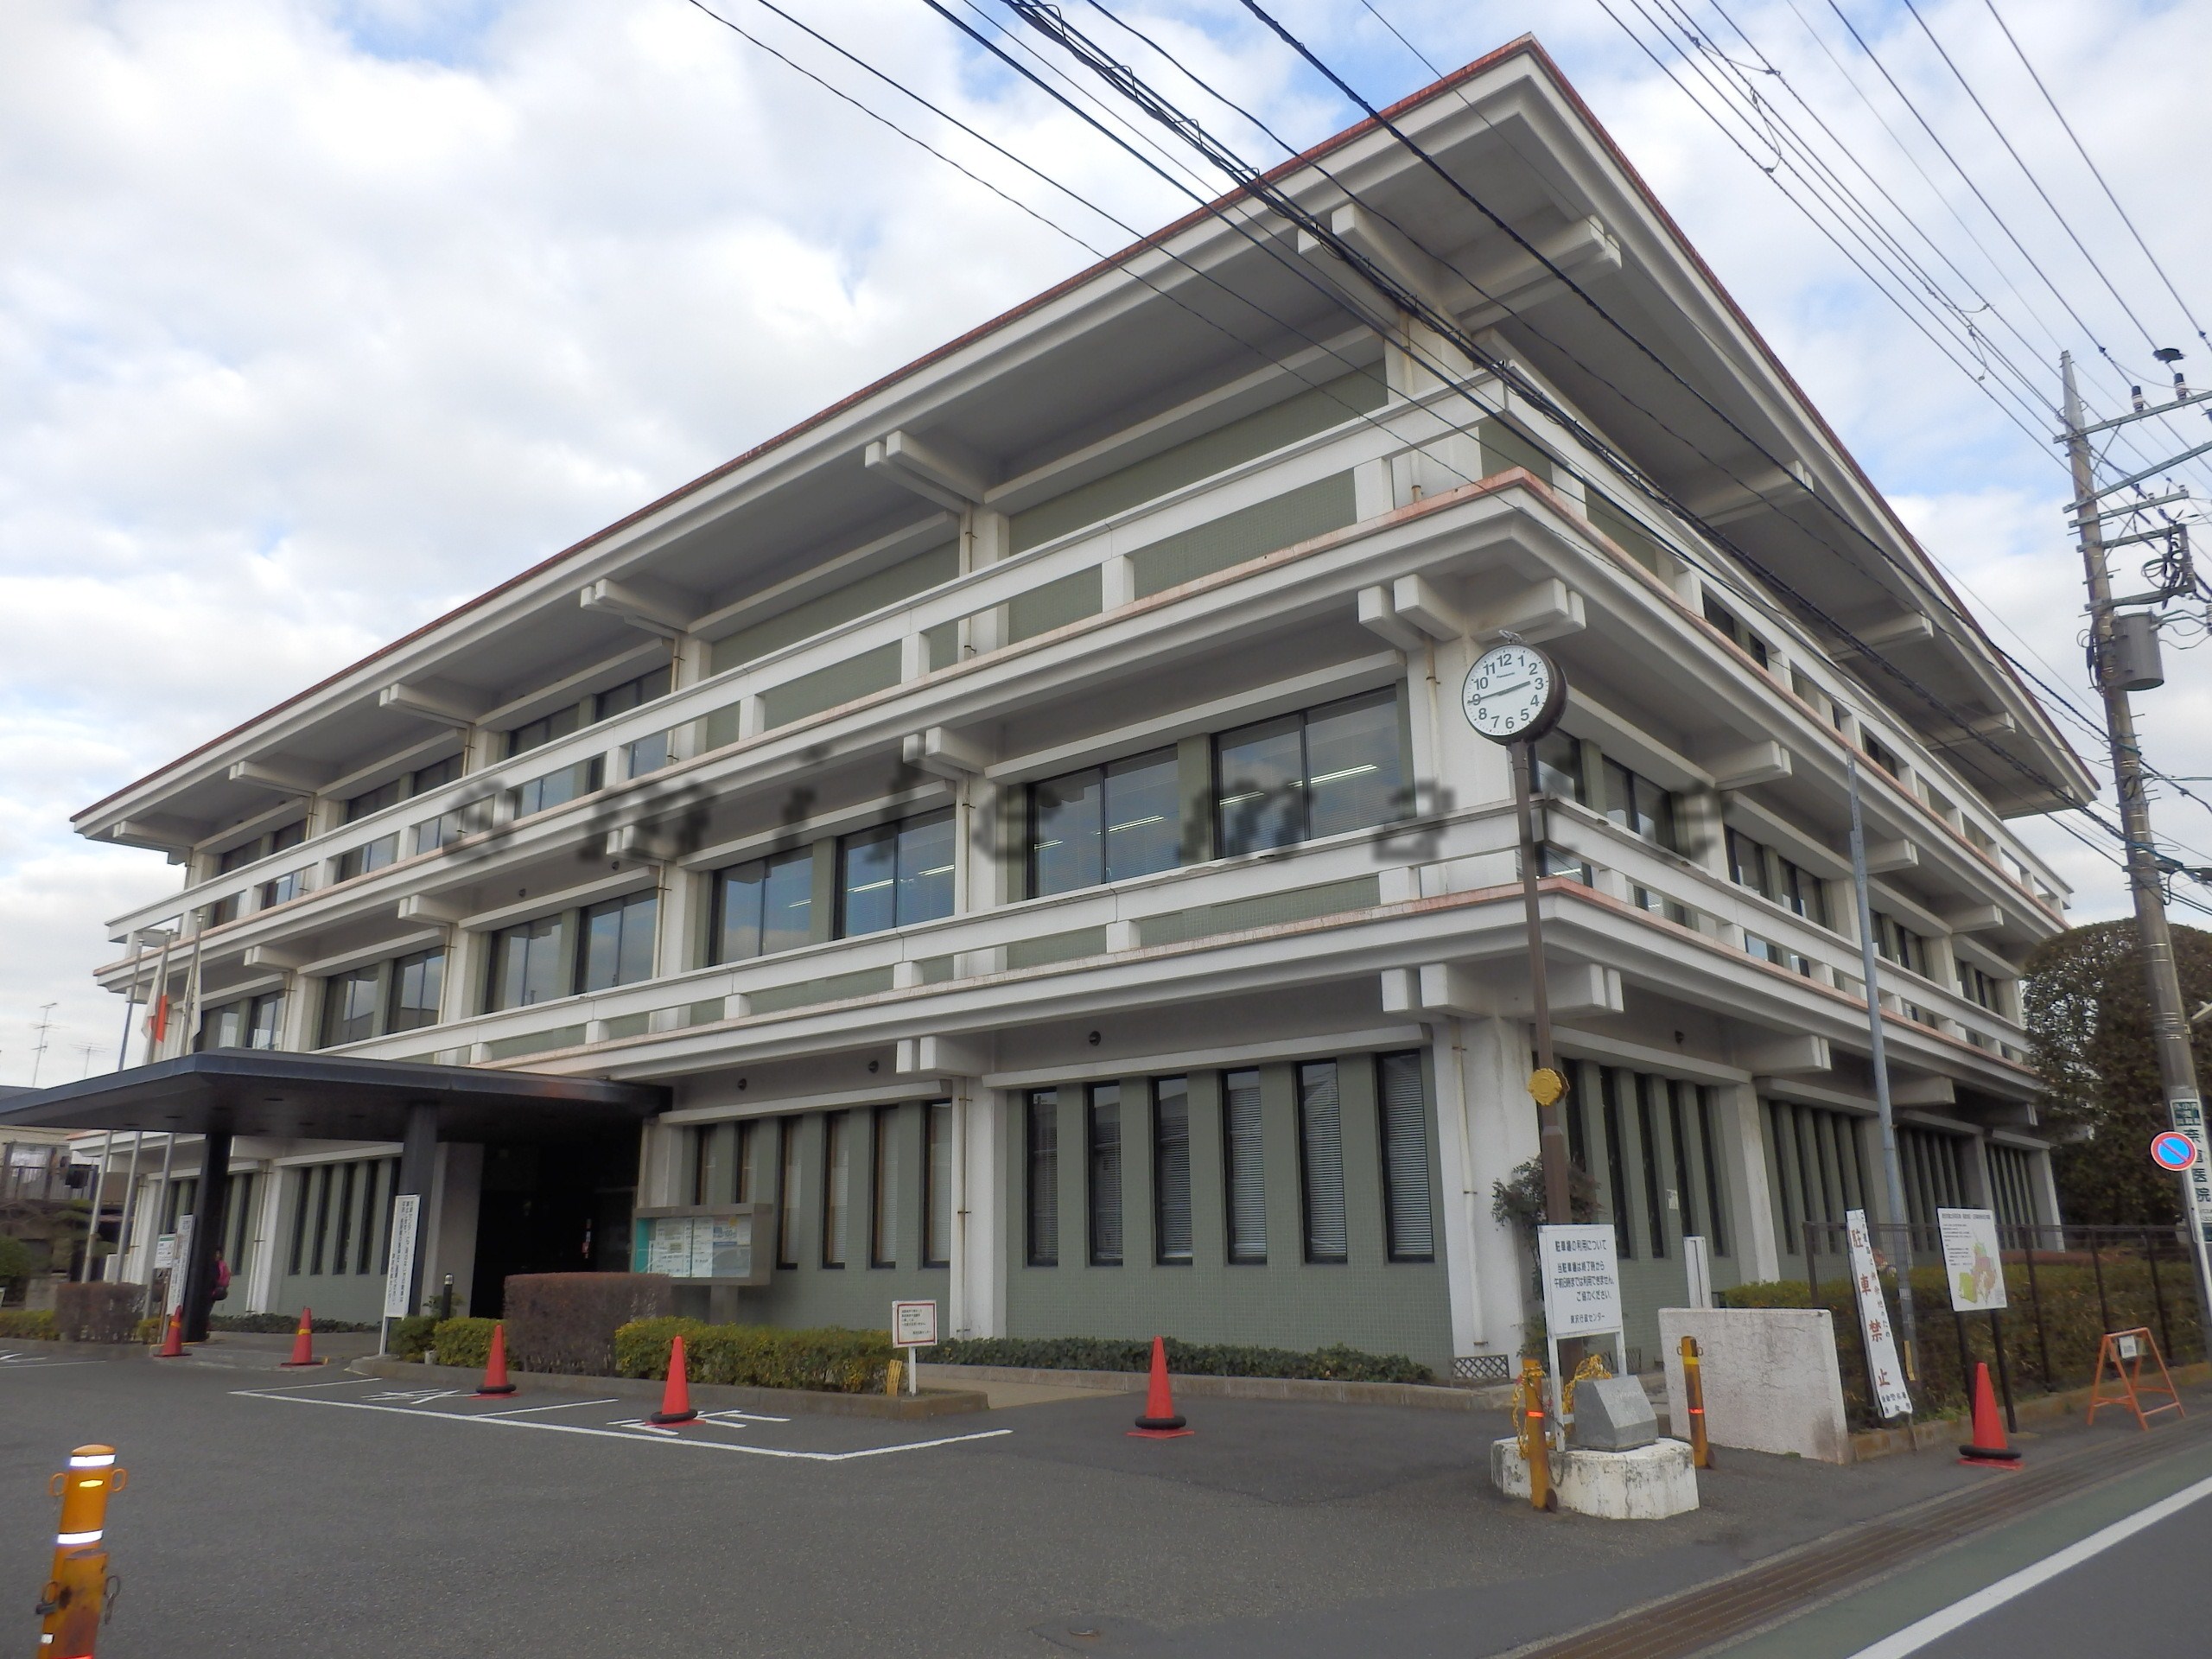 library. 892m to Kamakura Fukasawa library (library)